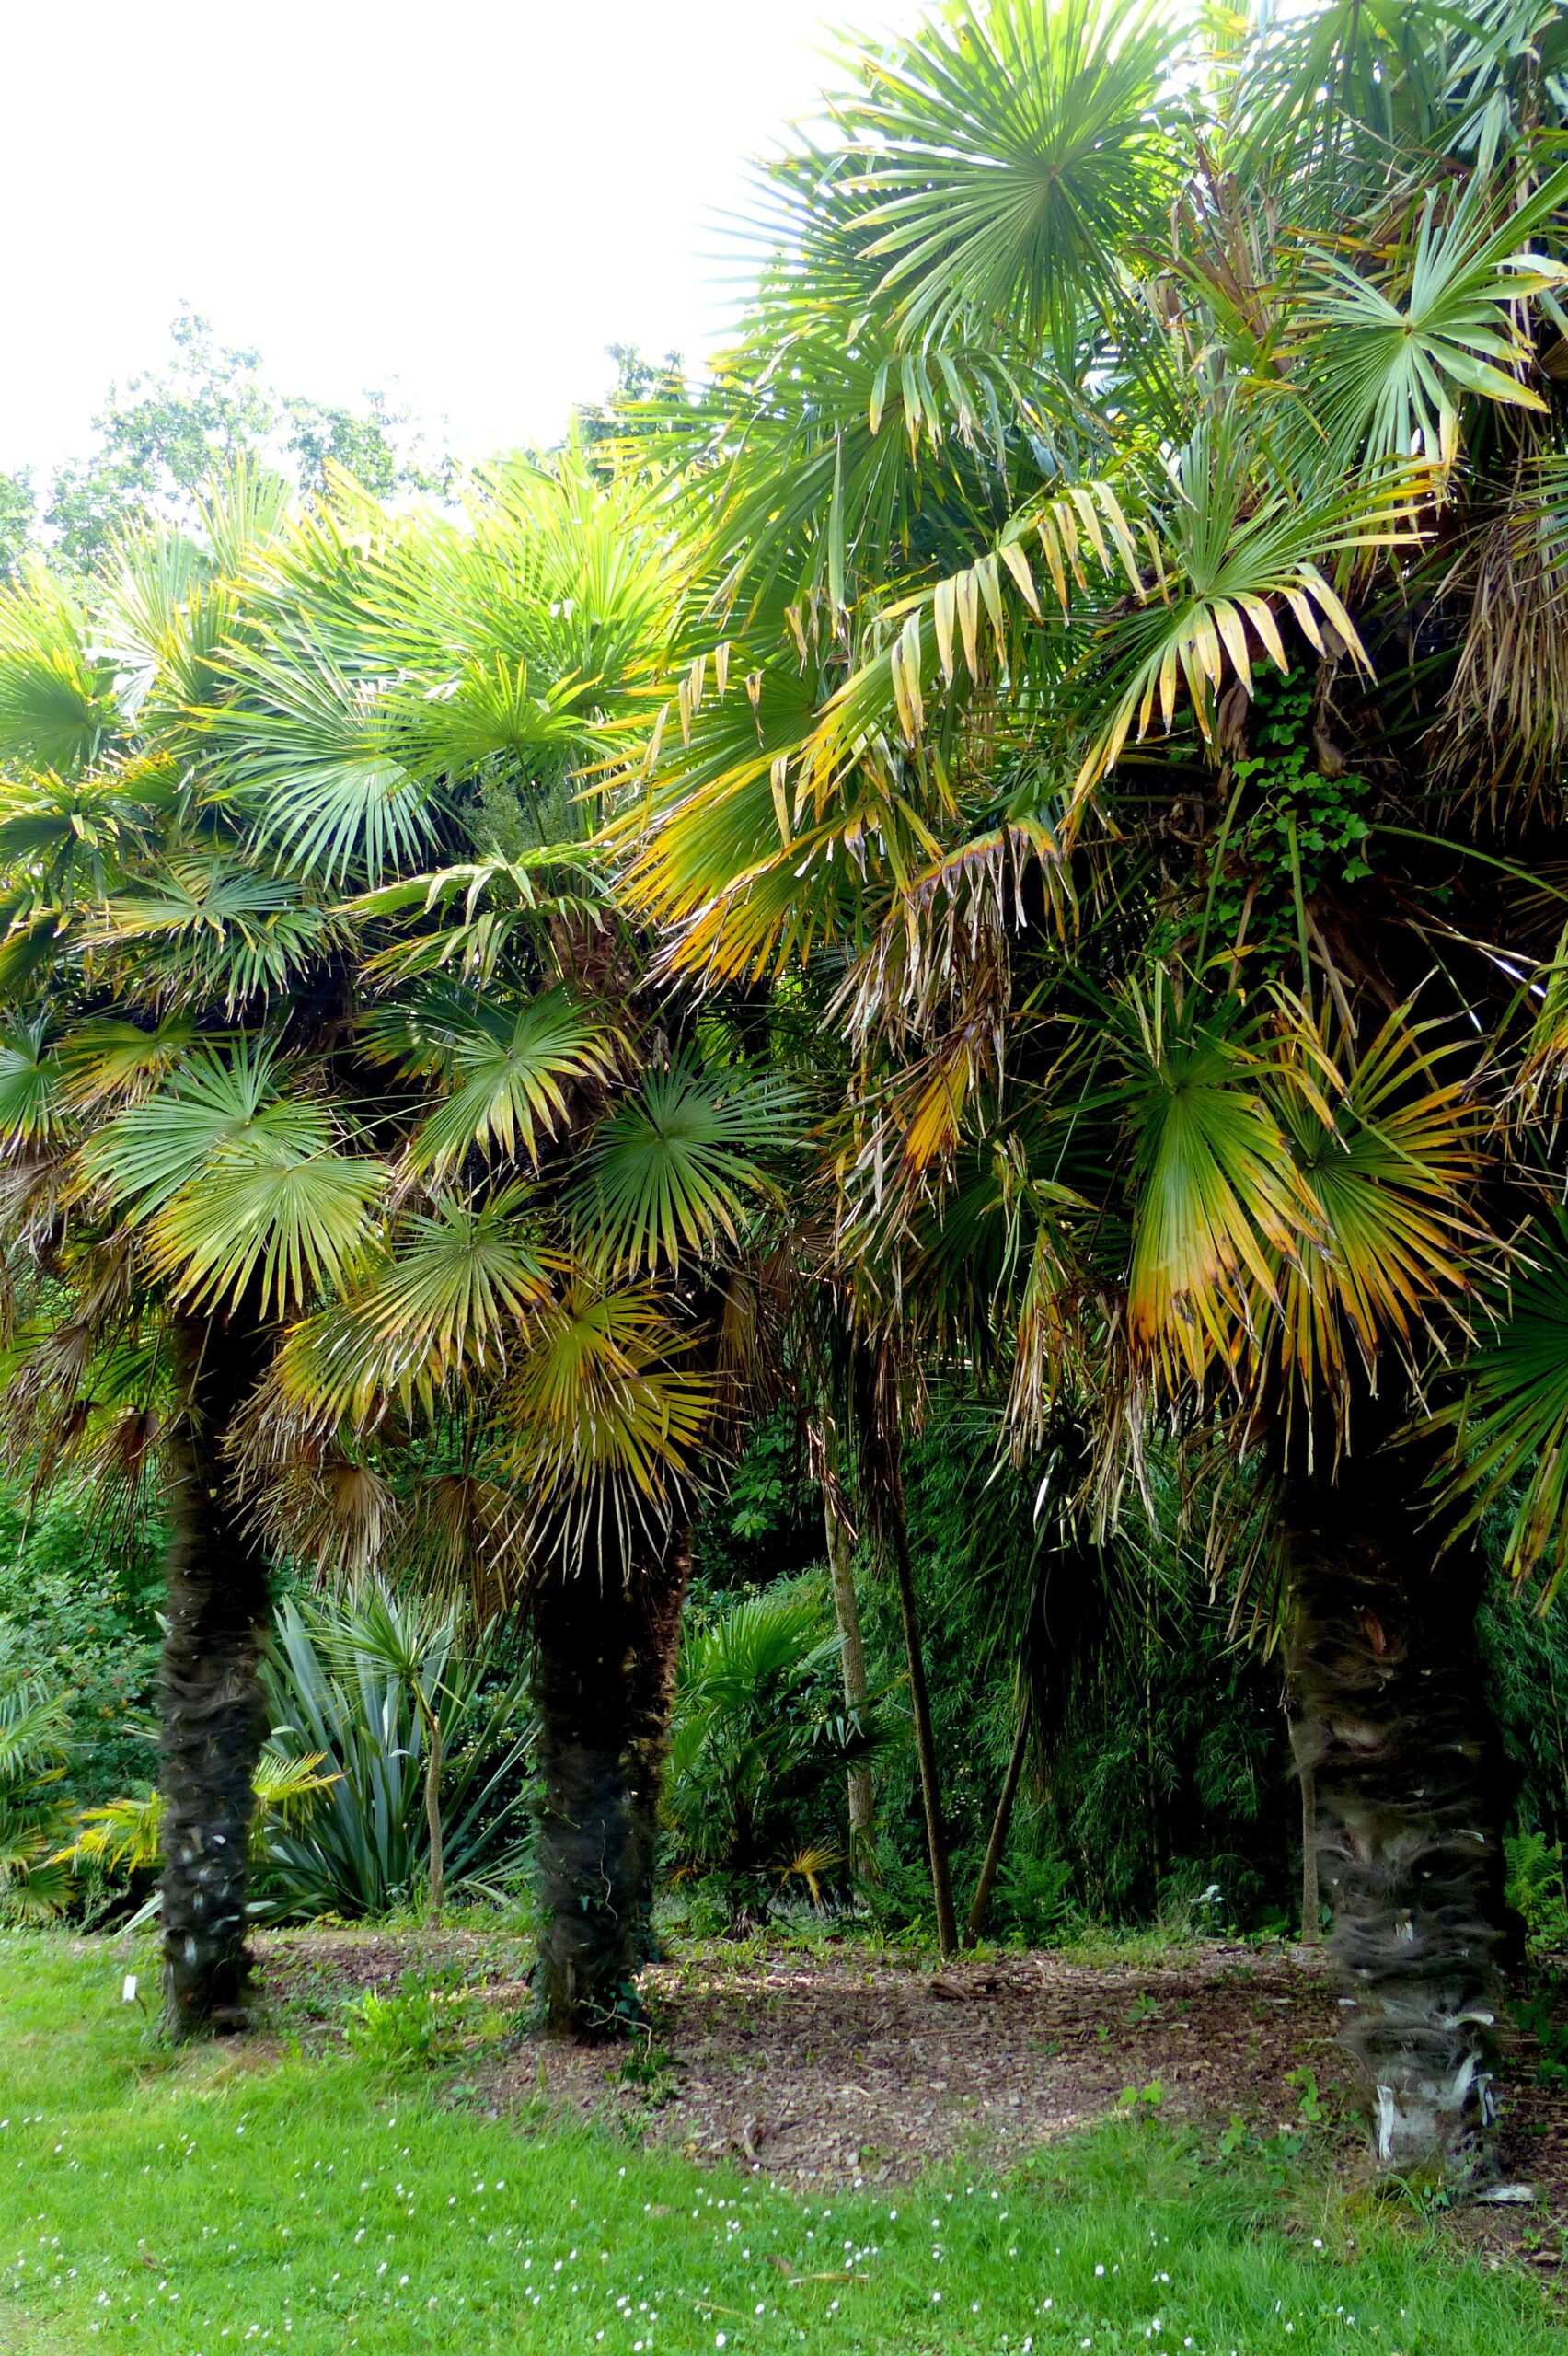 palmier-interieur-palmier-chanvre-feuilles-palmees-vert-fonce